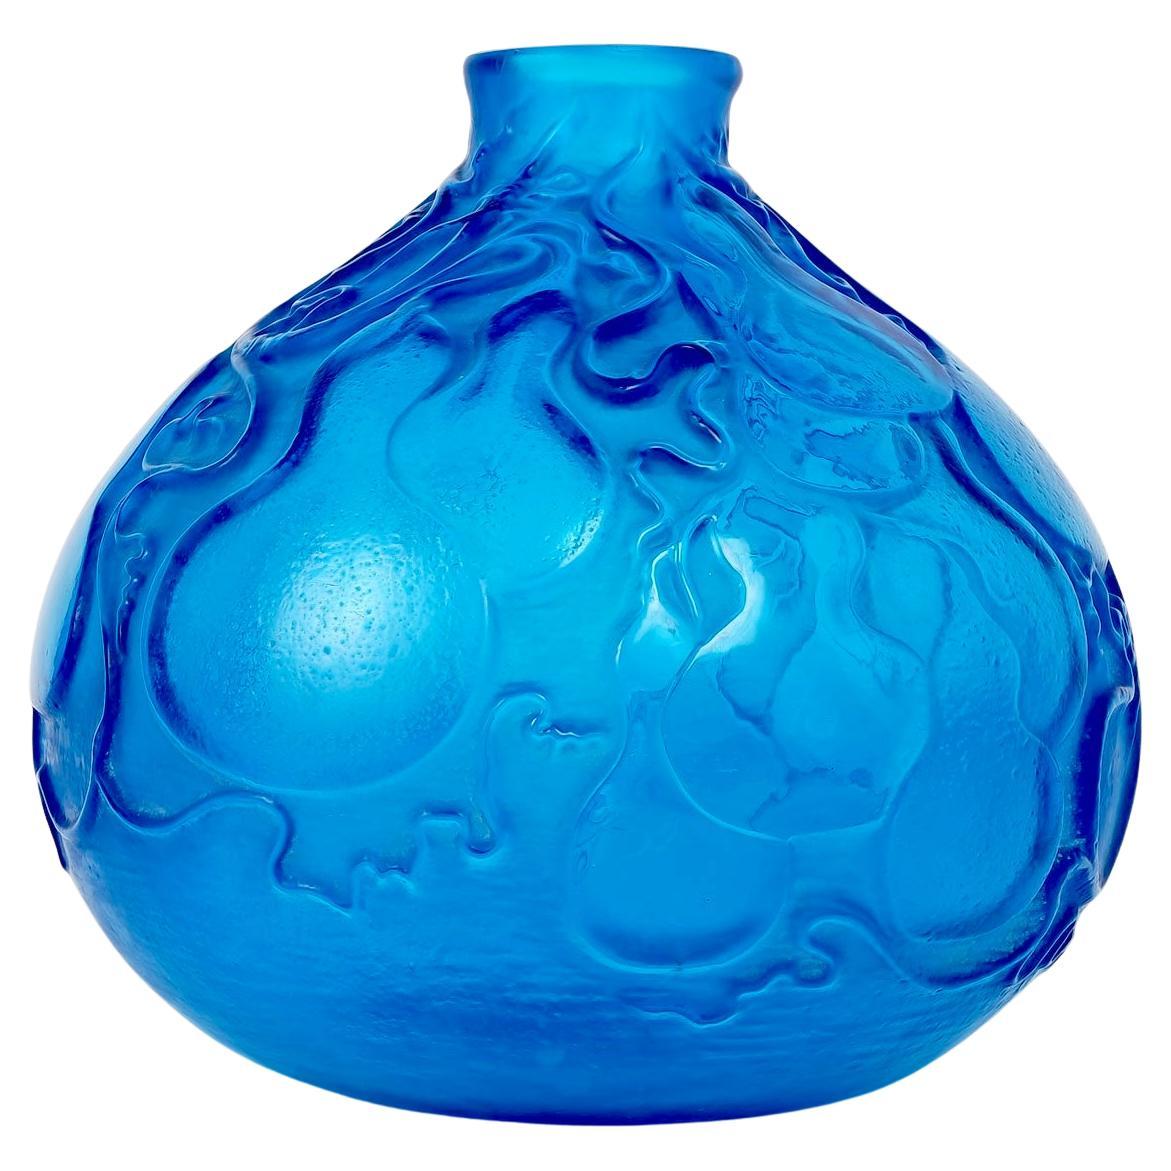 1914 René Lalique - Vase Courges Verre bleu électrique